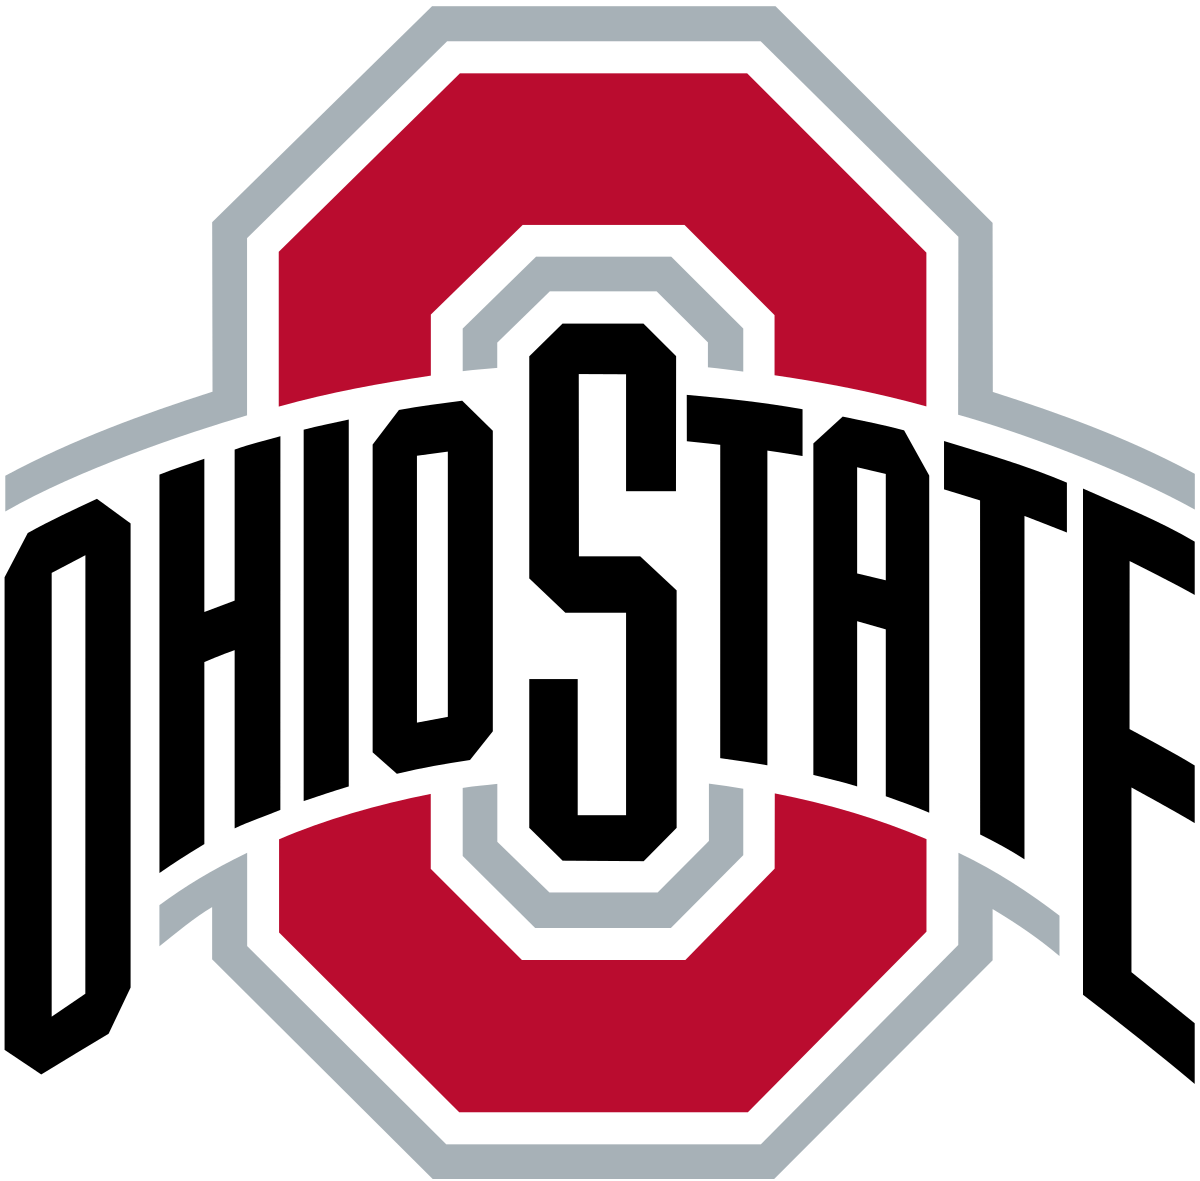 Ohio_State_Buckeyes_logo.svg